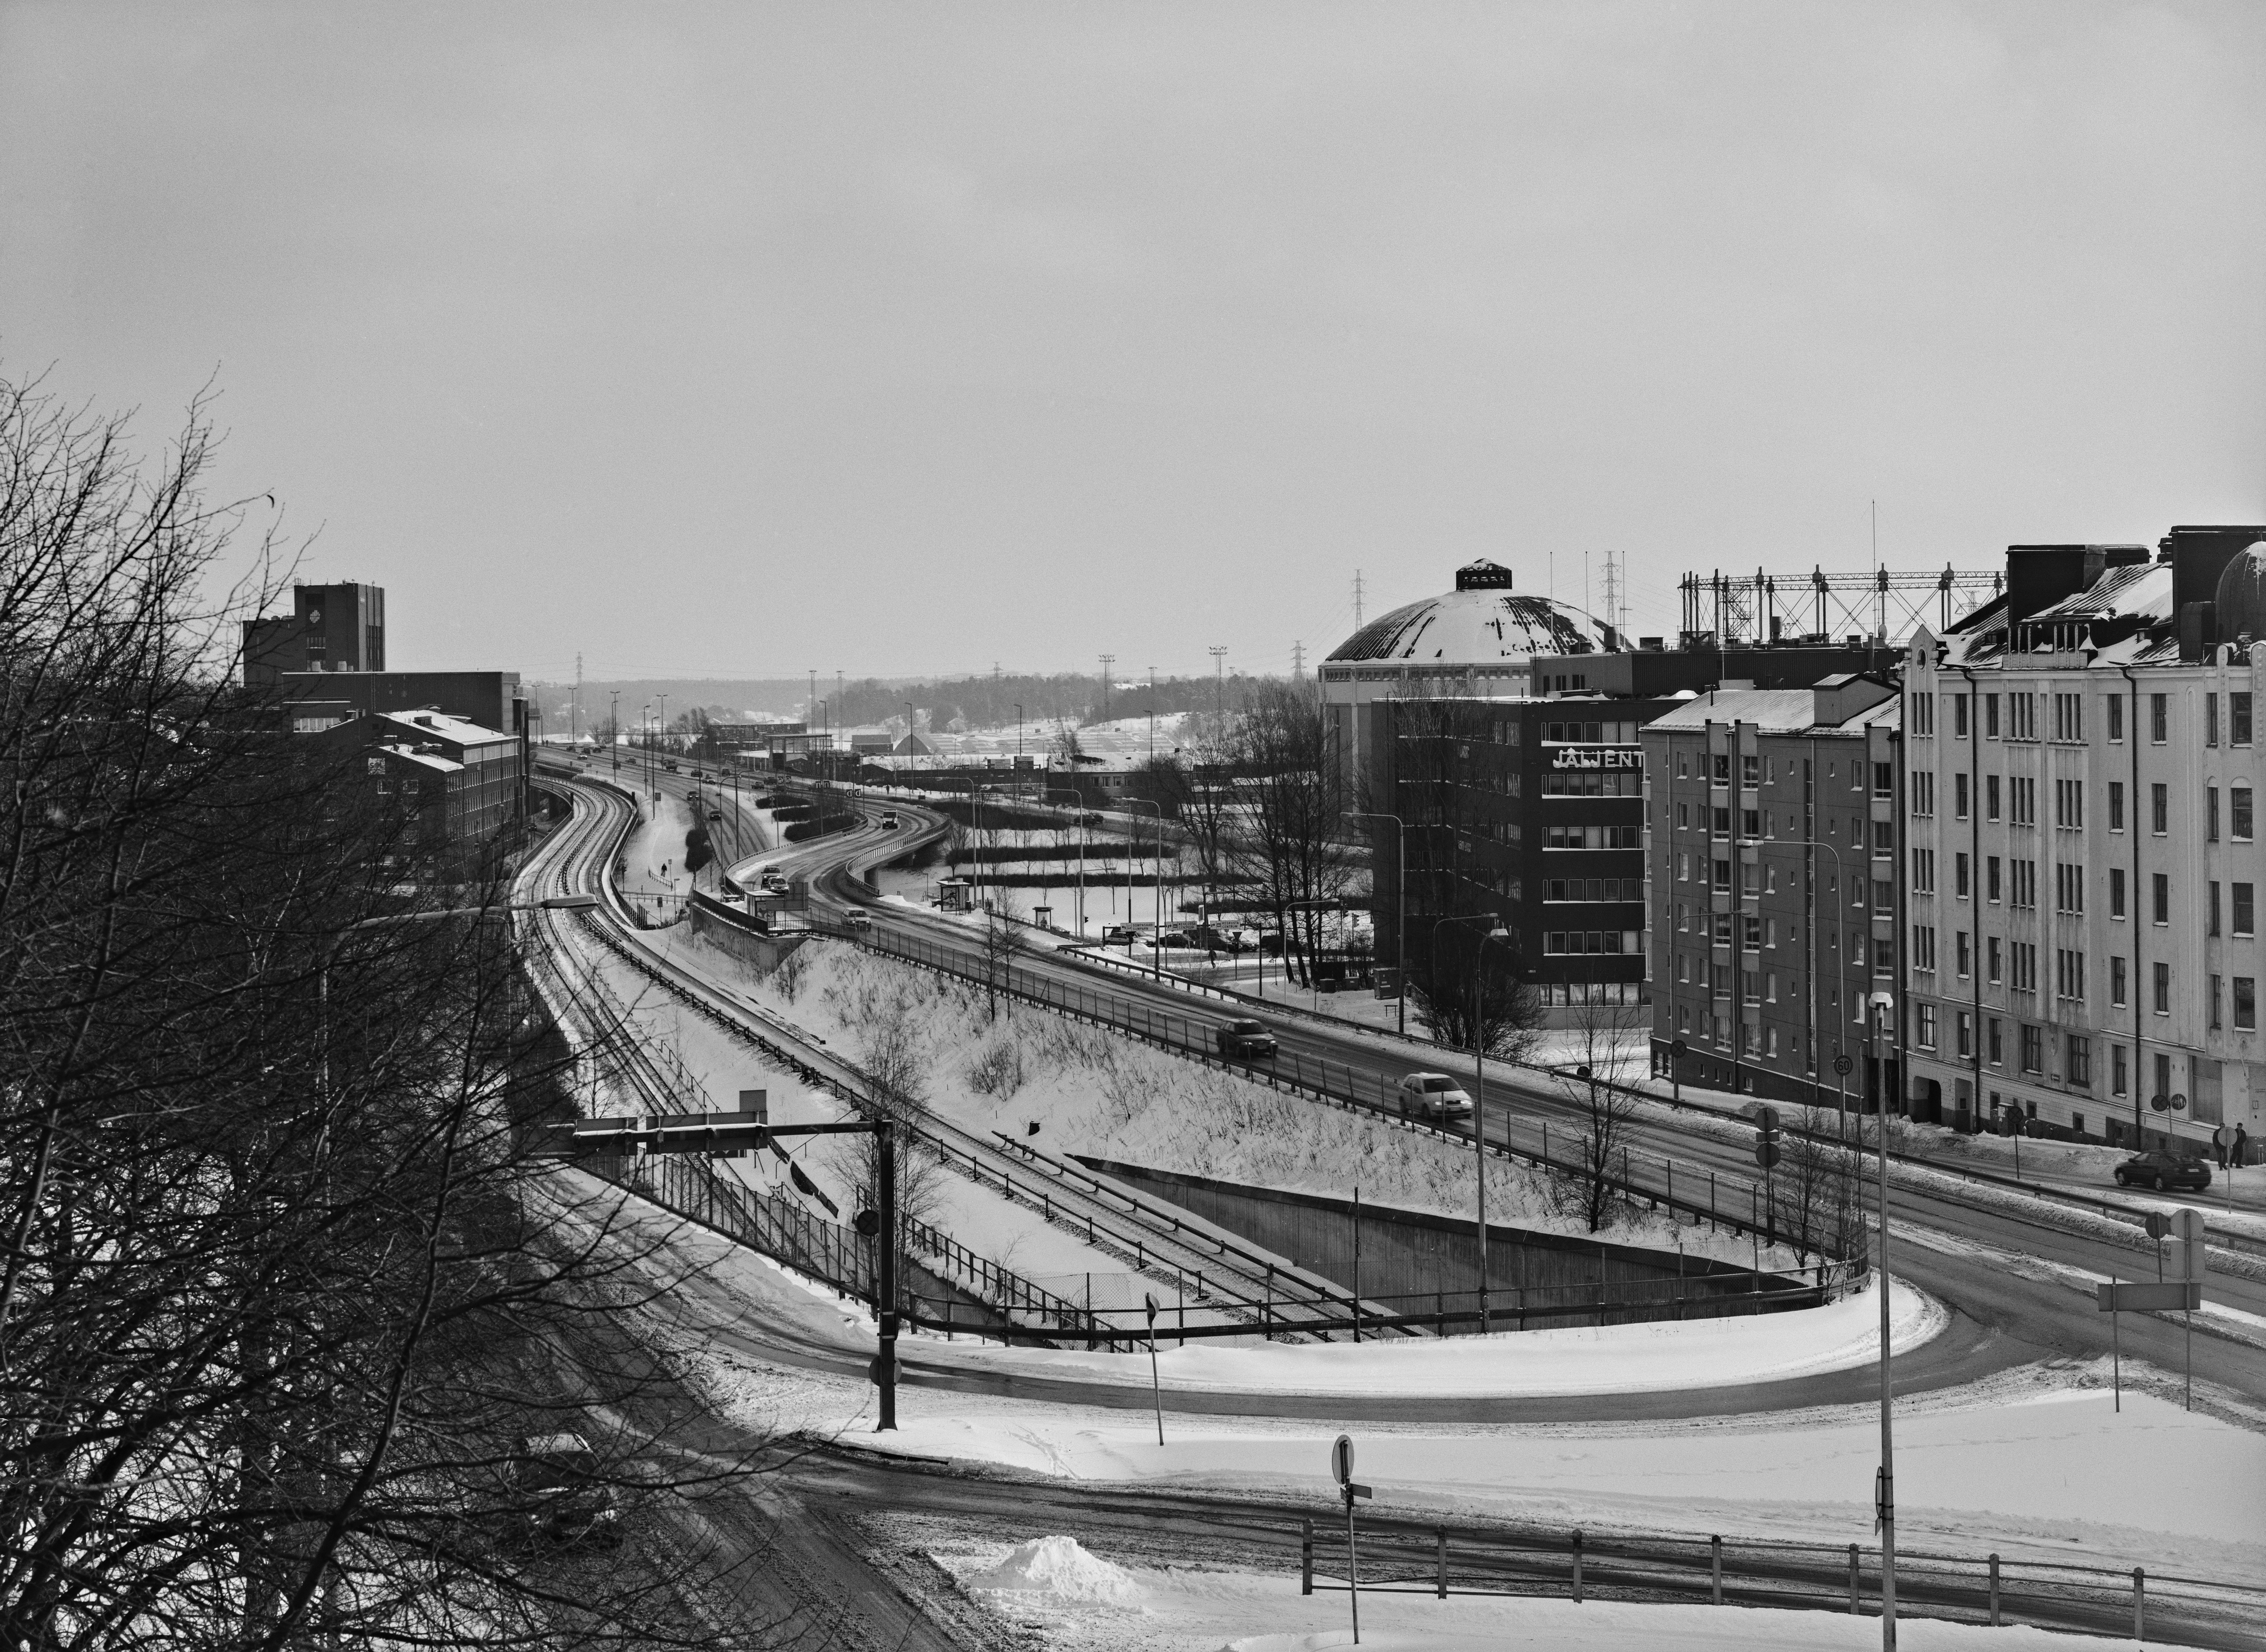 Näkymä Sörnäisistä Sörnäisen ja Vallilan yhdistävältä sillalta Kulosaaren sillan suuntaan. Oikealla Pääskylänkatu 9, 11 ja 13 sekä niiden takana Suvisaaren kaasukello. Pääskylänkadun vasemmalla puolella metroliikenteen ulostulo- ja sisäänmenoväylät Sörnäisten asemalle. Metrolinjasta vasemmalle näkyy Lautatarhankadun toimistorakennuksia. Maahan on satanut kevyesti uutta lunta.